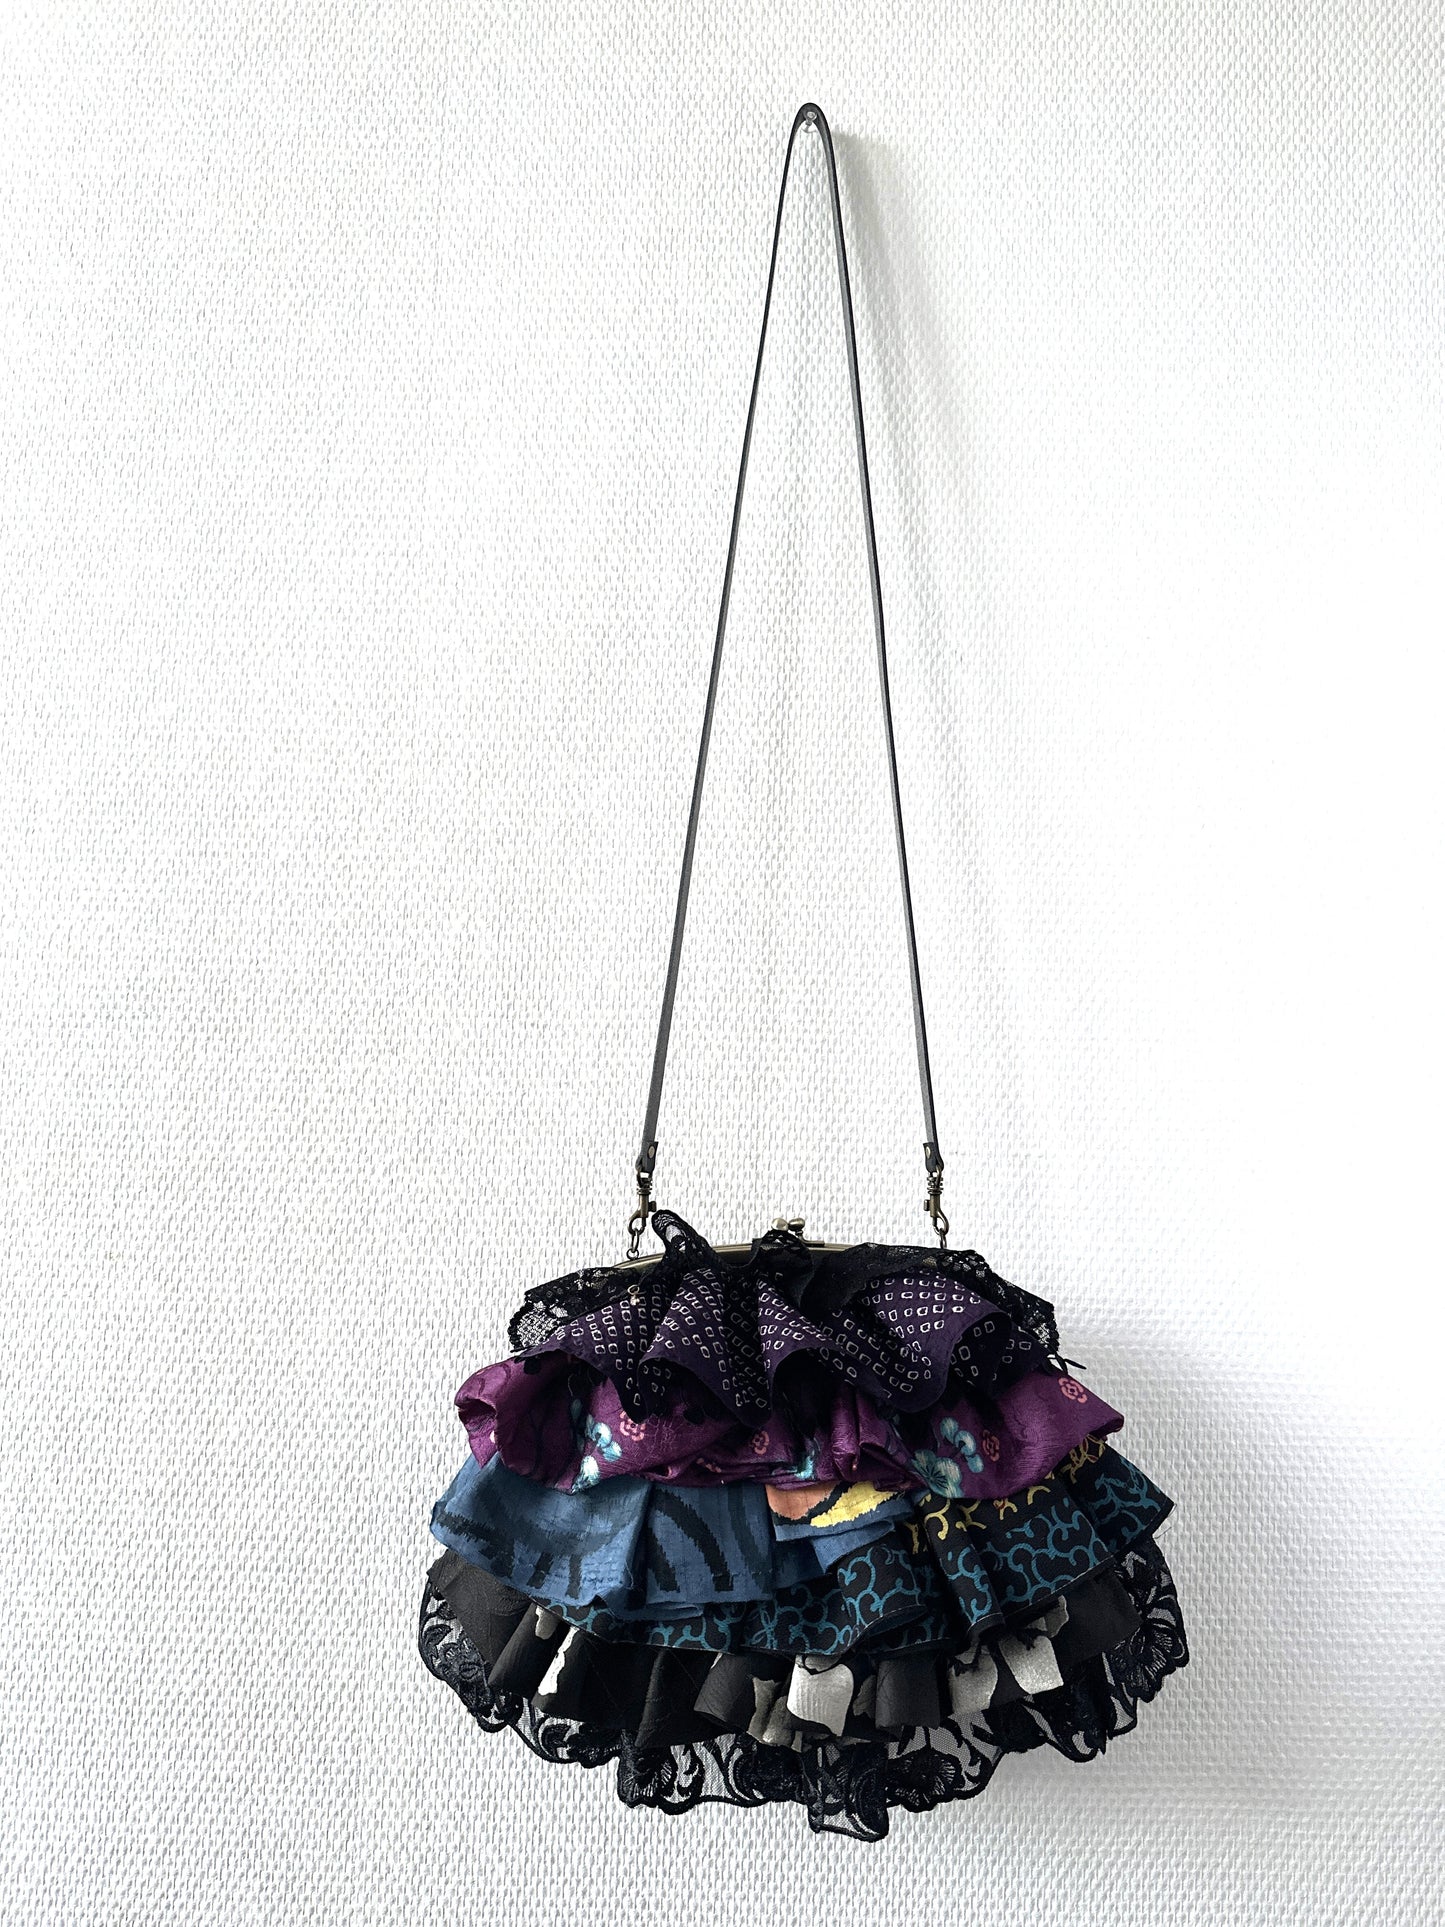 【Gogatsudo】 3way-Handbag/Schwarz, antike Meisen, Schnickschnack, Kupplung, Beutel, japanische Tasche, Umhängetasche, japanische Geschenke